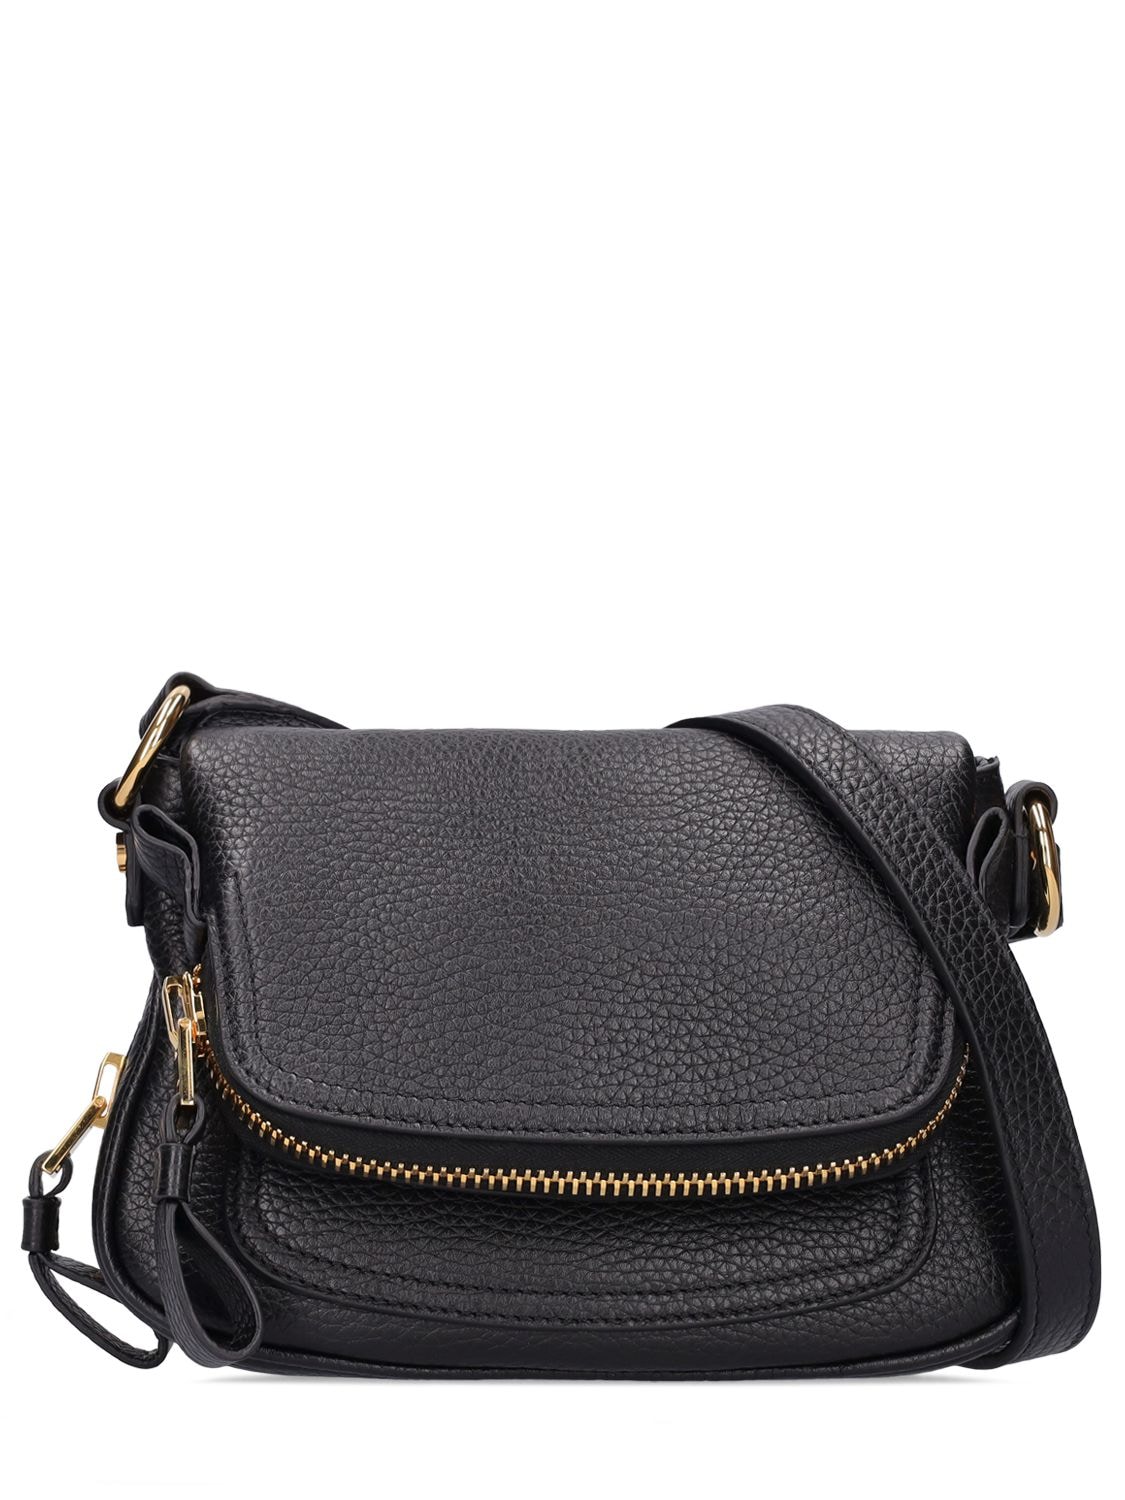 Tom Ford Jennifer Medium Grained Leather Shoulder Bag In Black